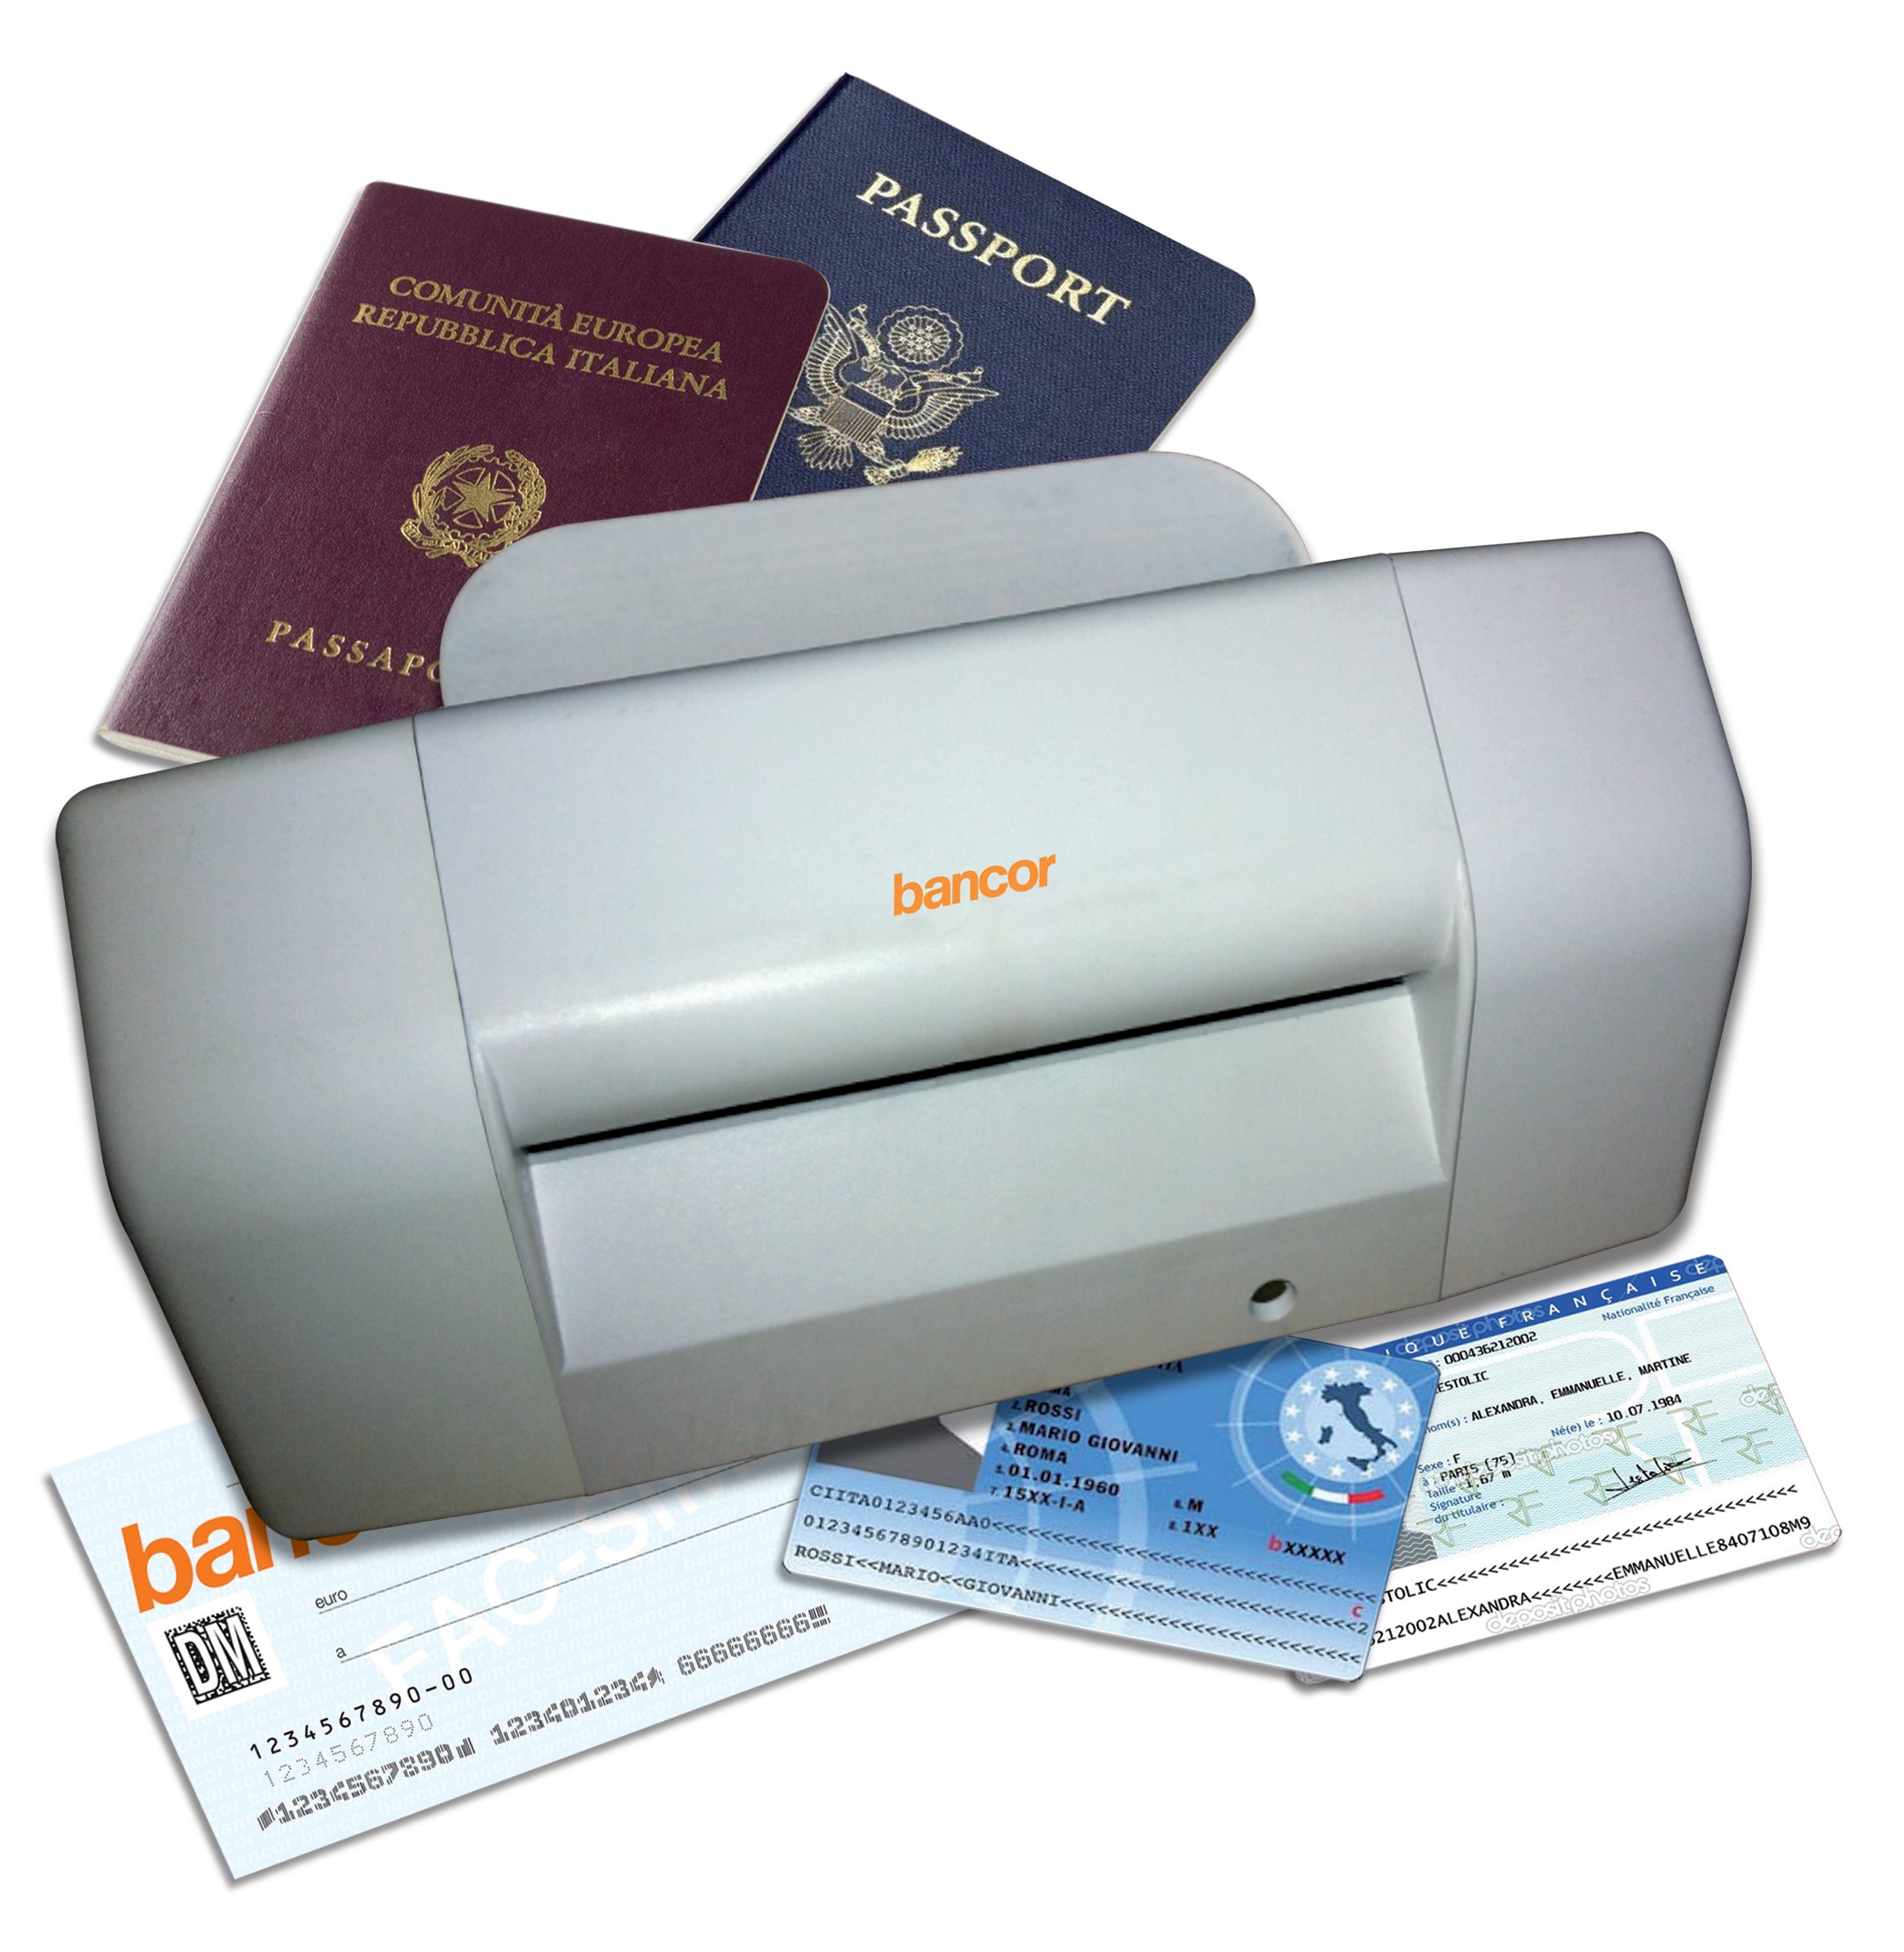 bPASS 60 - scanner per gestione documenti fino al formato A6 - bancor